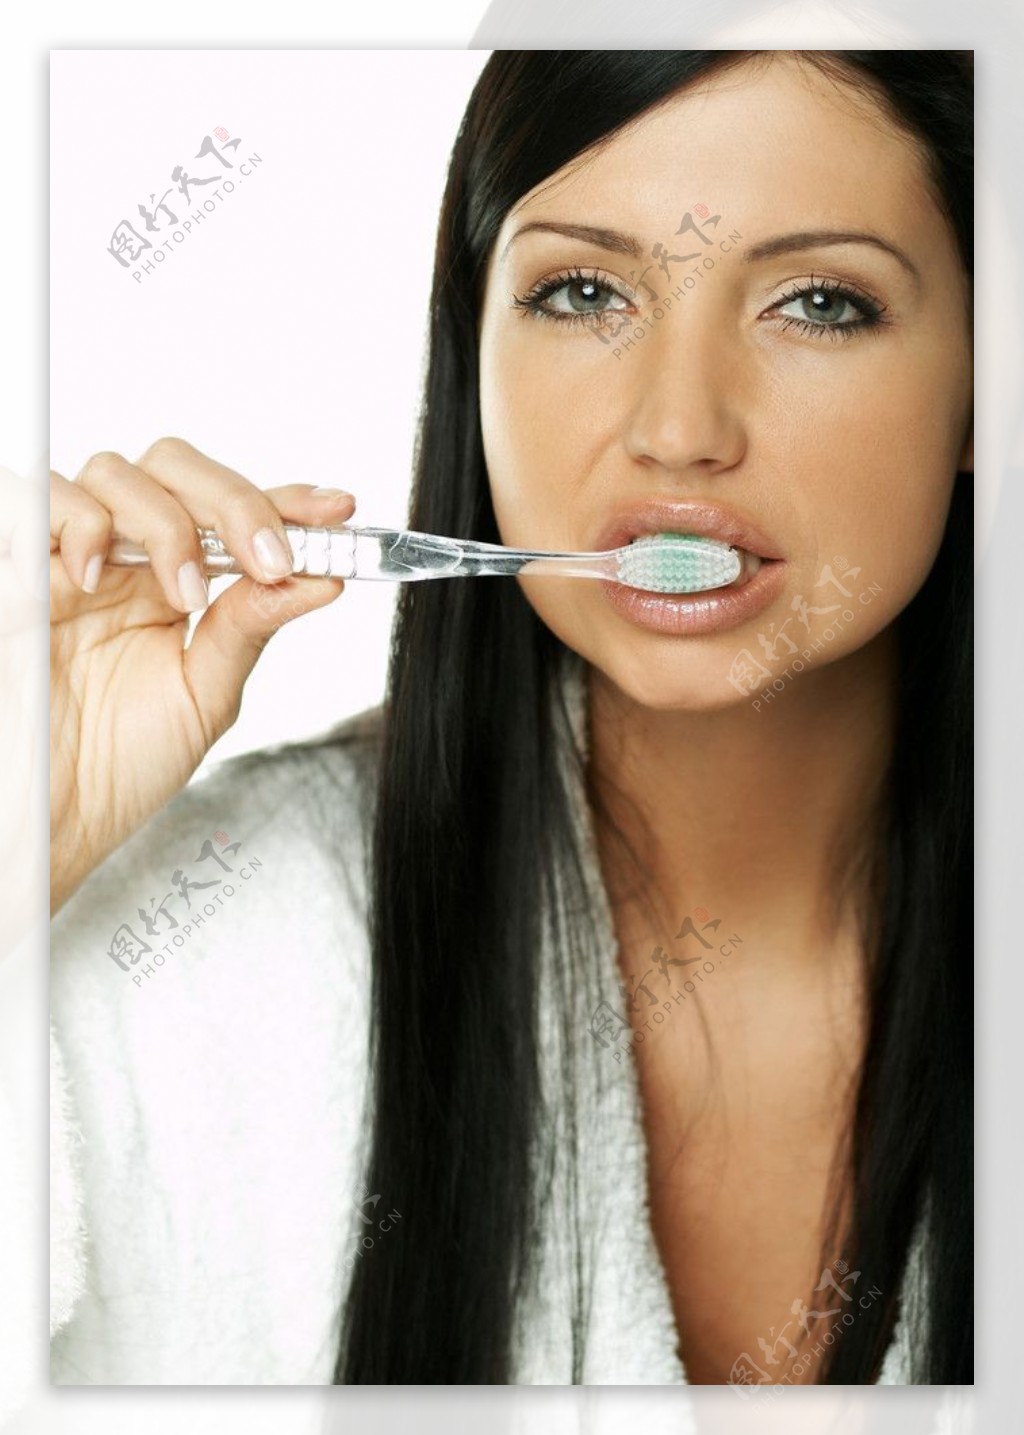 每天幫寶寶刷牙卻還是蛀牙?這五個關鍵要點你做到了嗎?